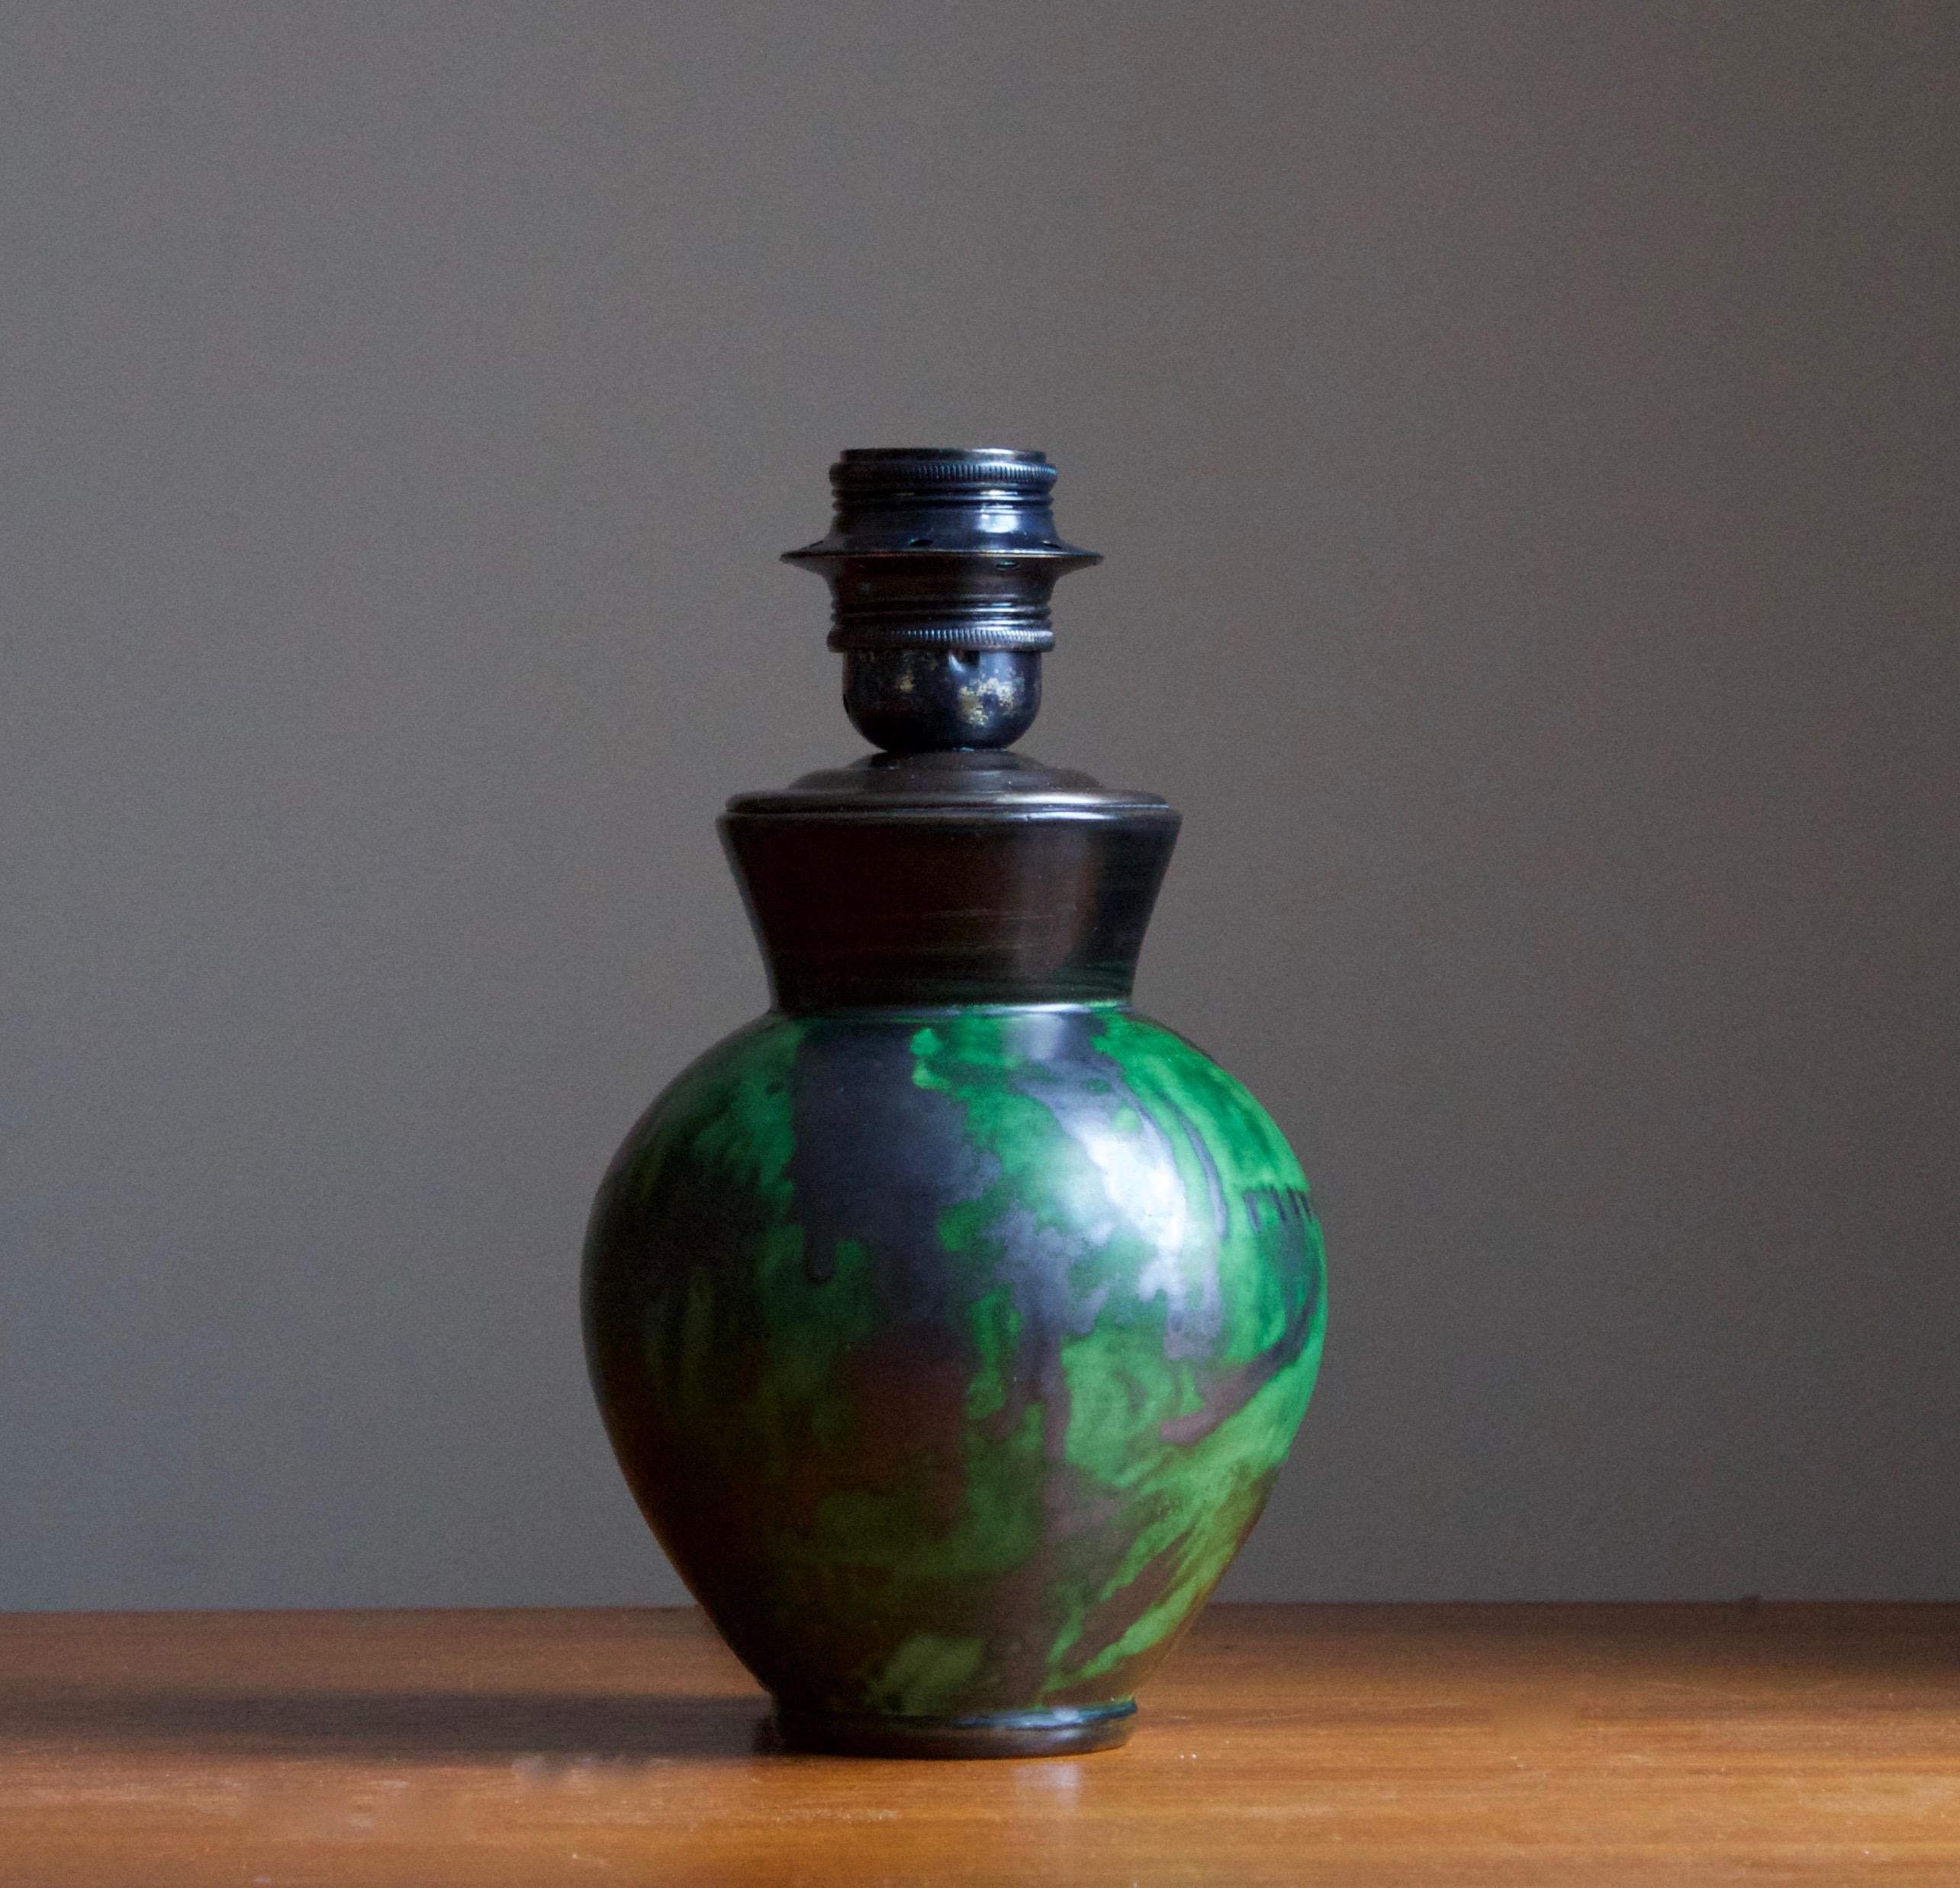 Scandinavian Modern Erik Mornils, Table Lamp, Green Glazed Ceramic, Brass, Nittsjö, Sweden, 1940s